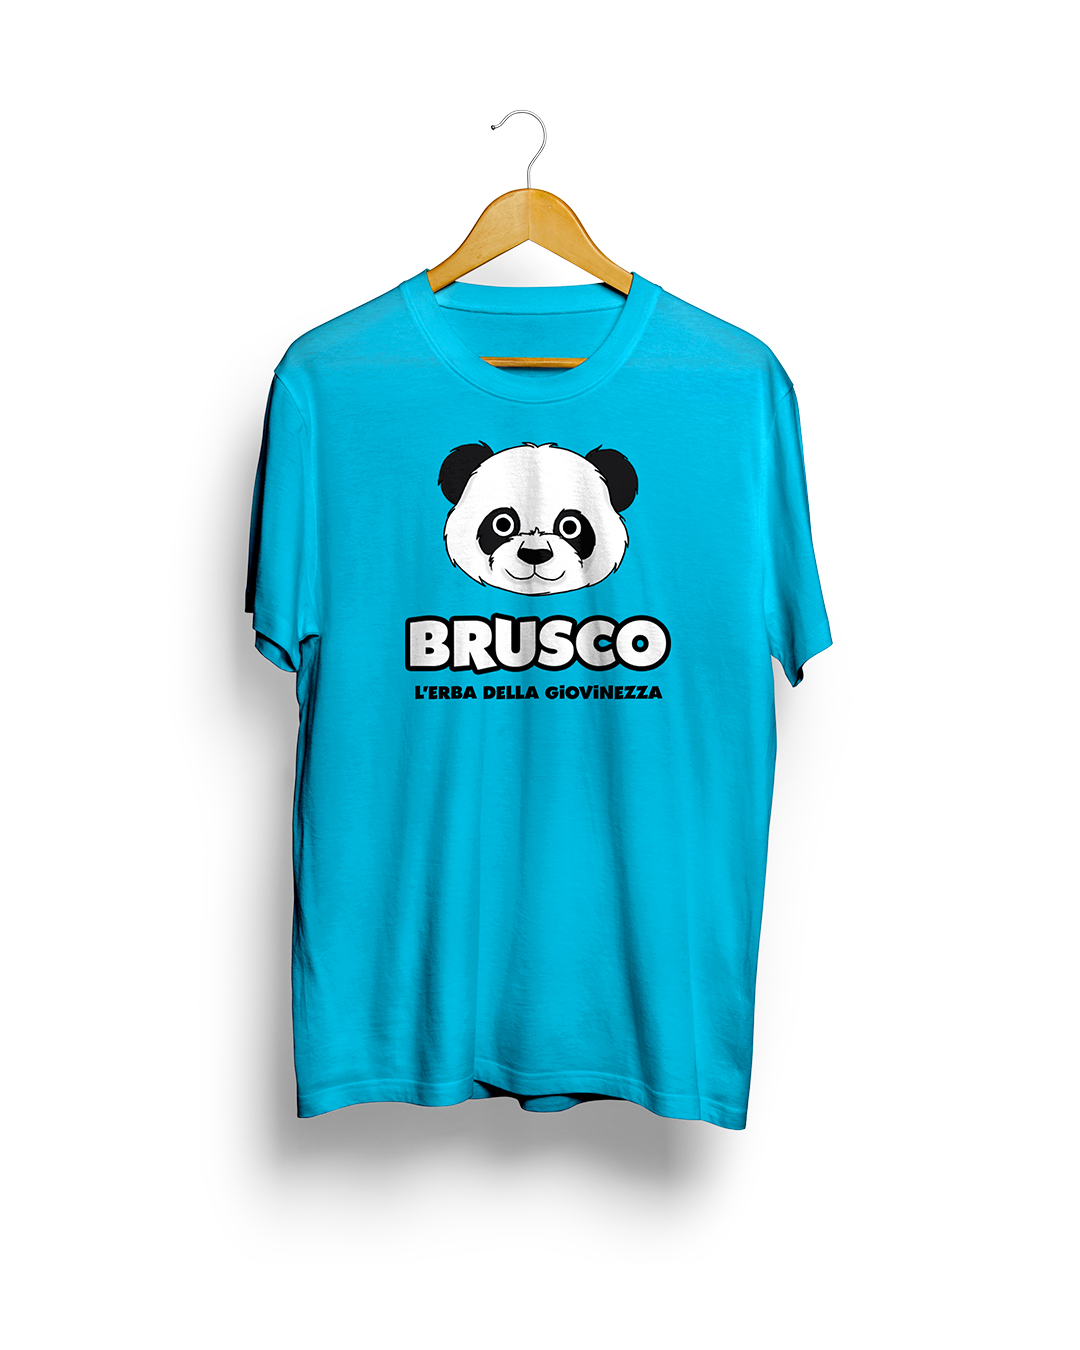 Brusco - L'Erba della Giovinezza, Official T-Shirt, Azure Version